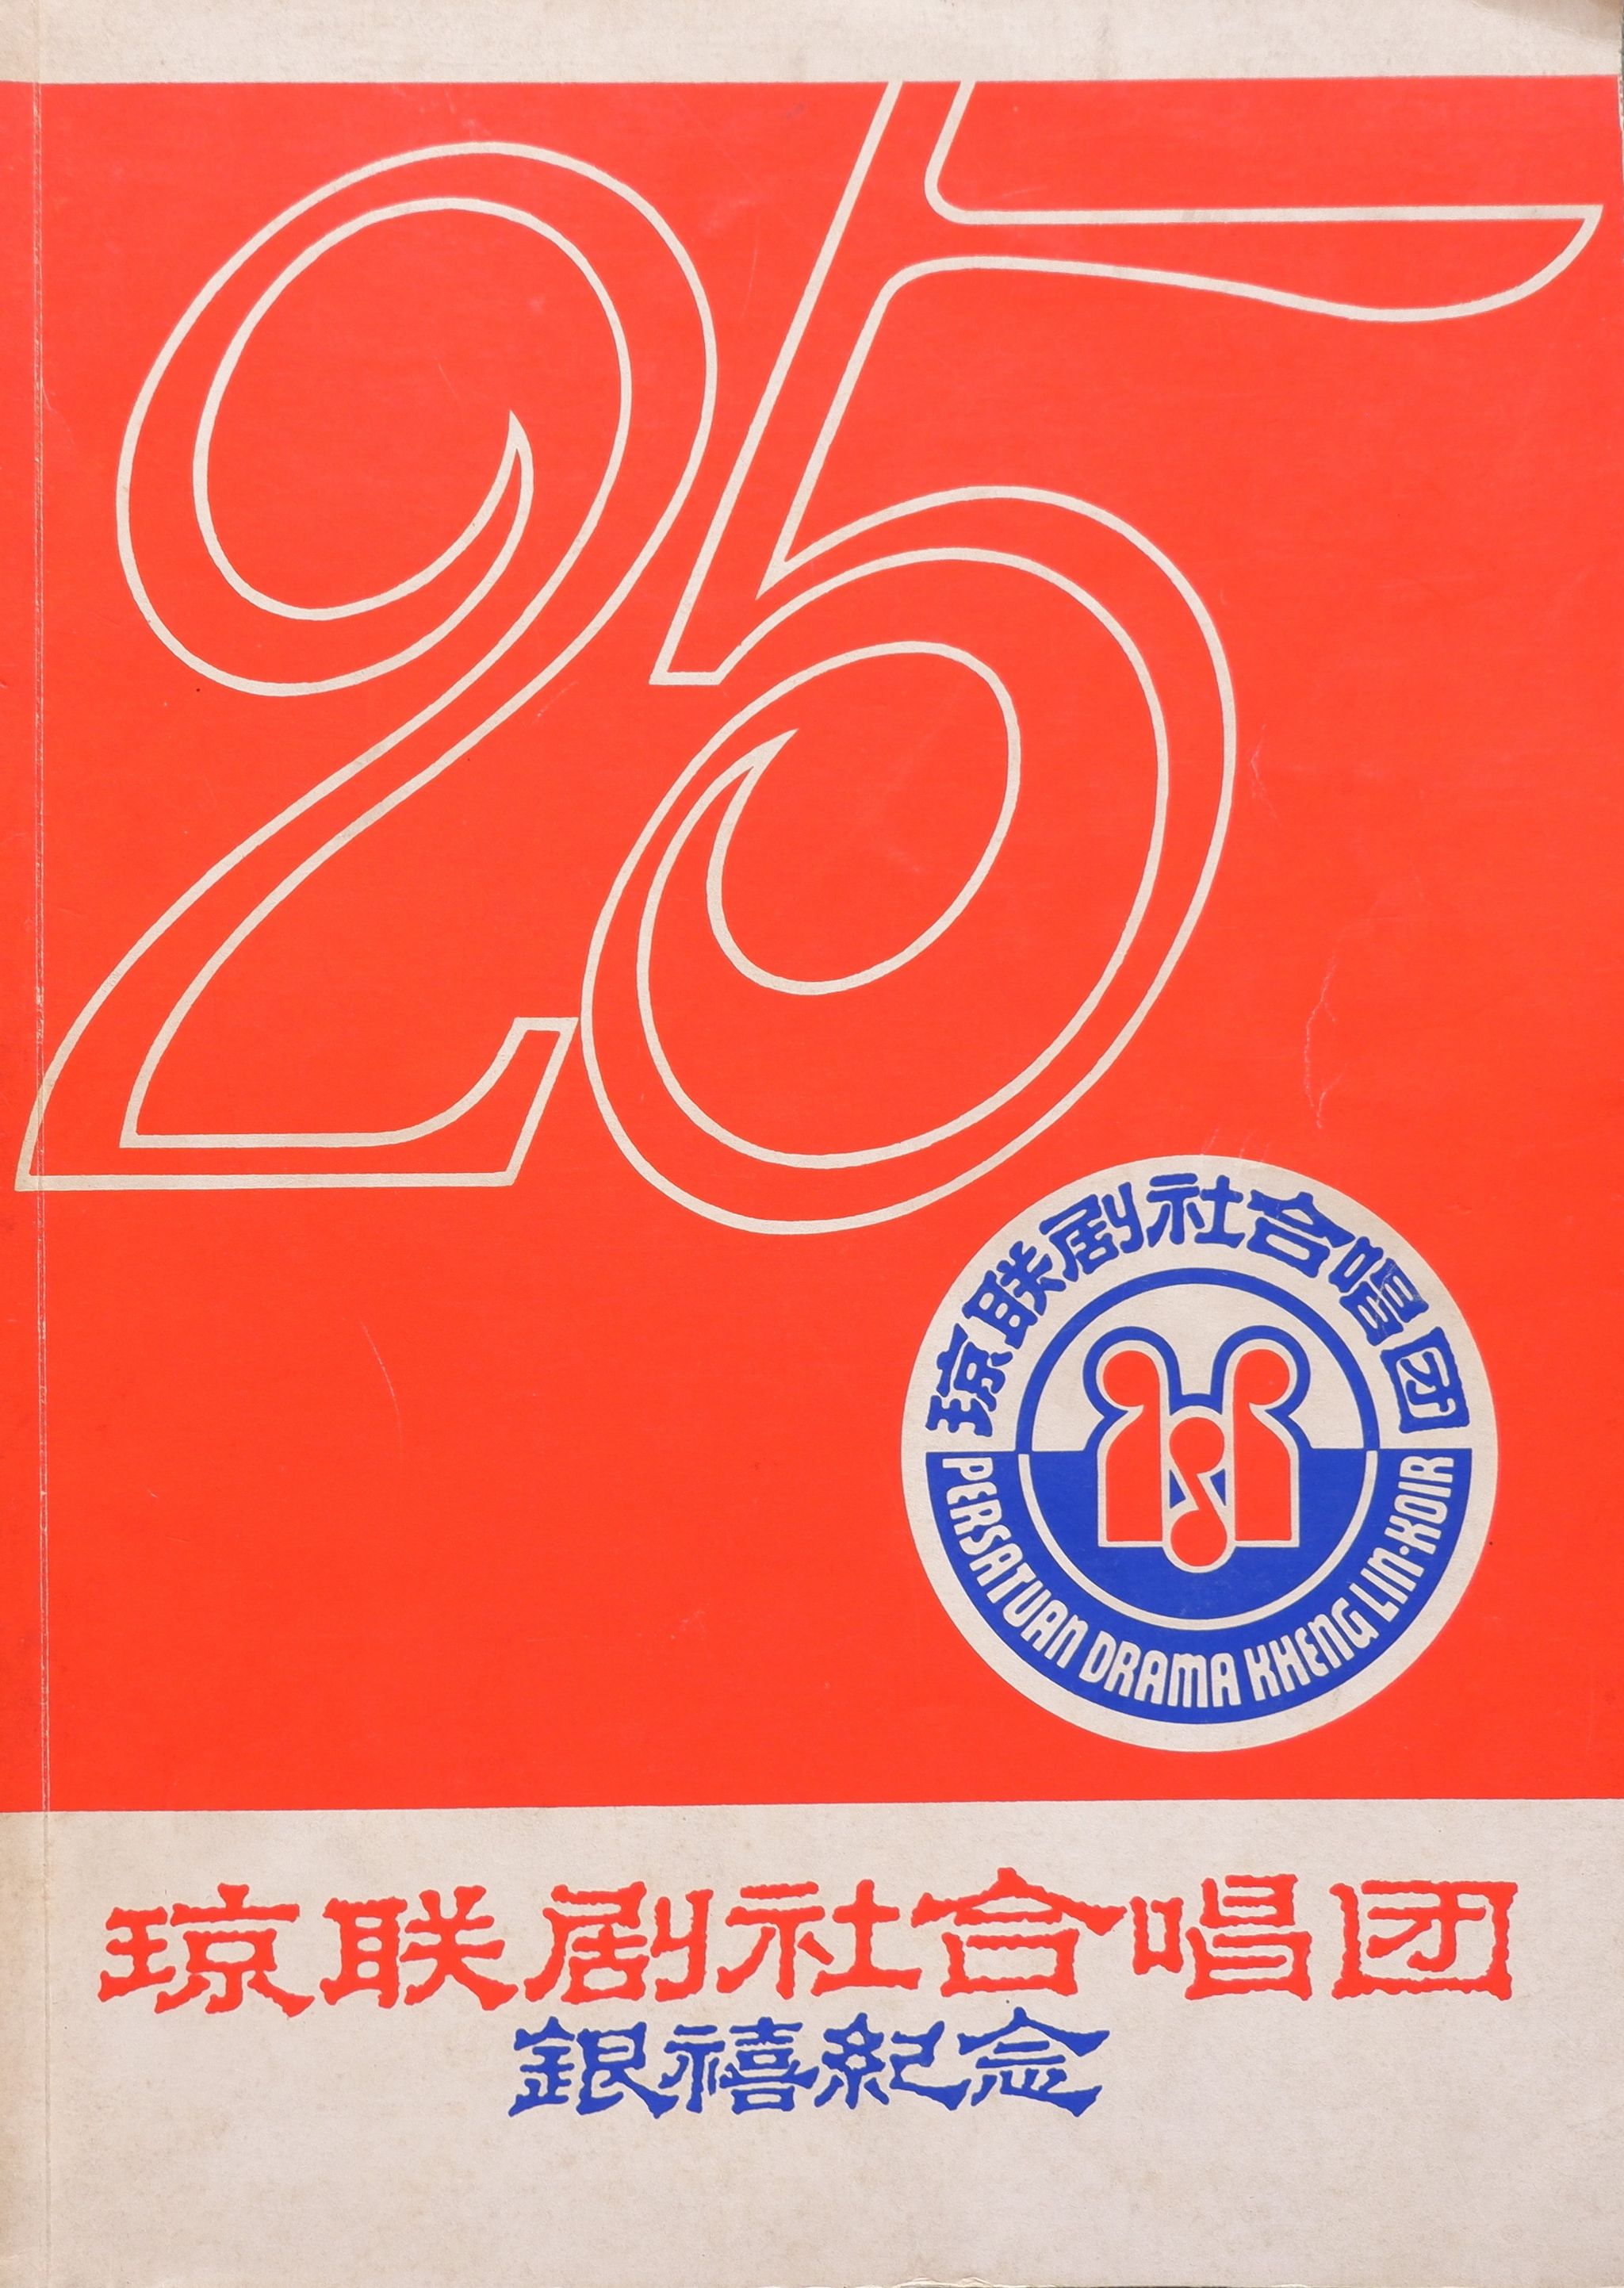 1983 Anniversary Gala Night Cover